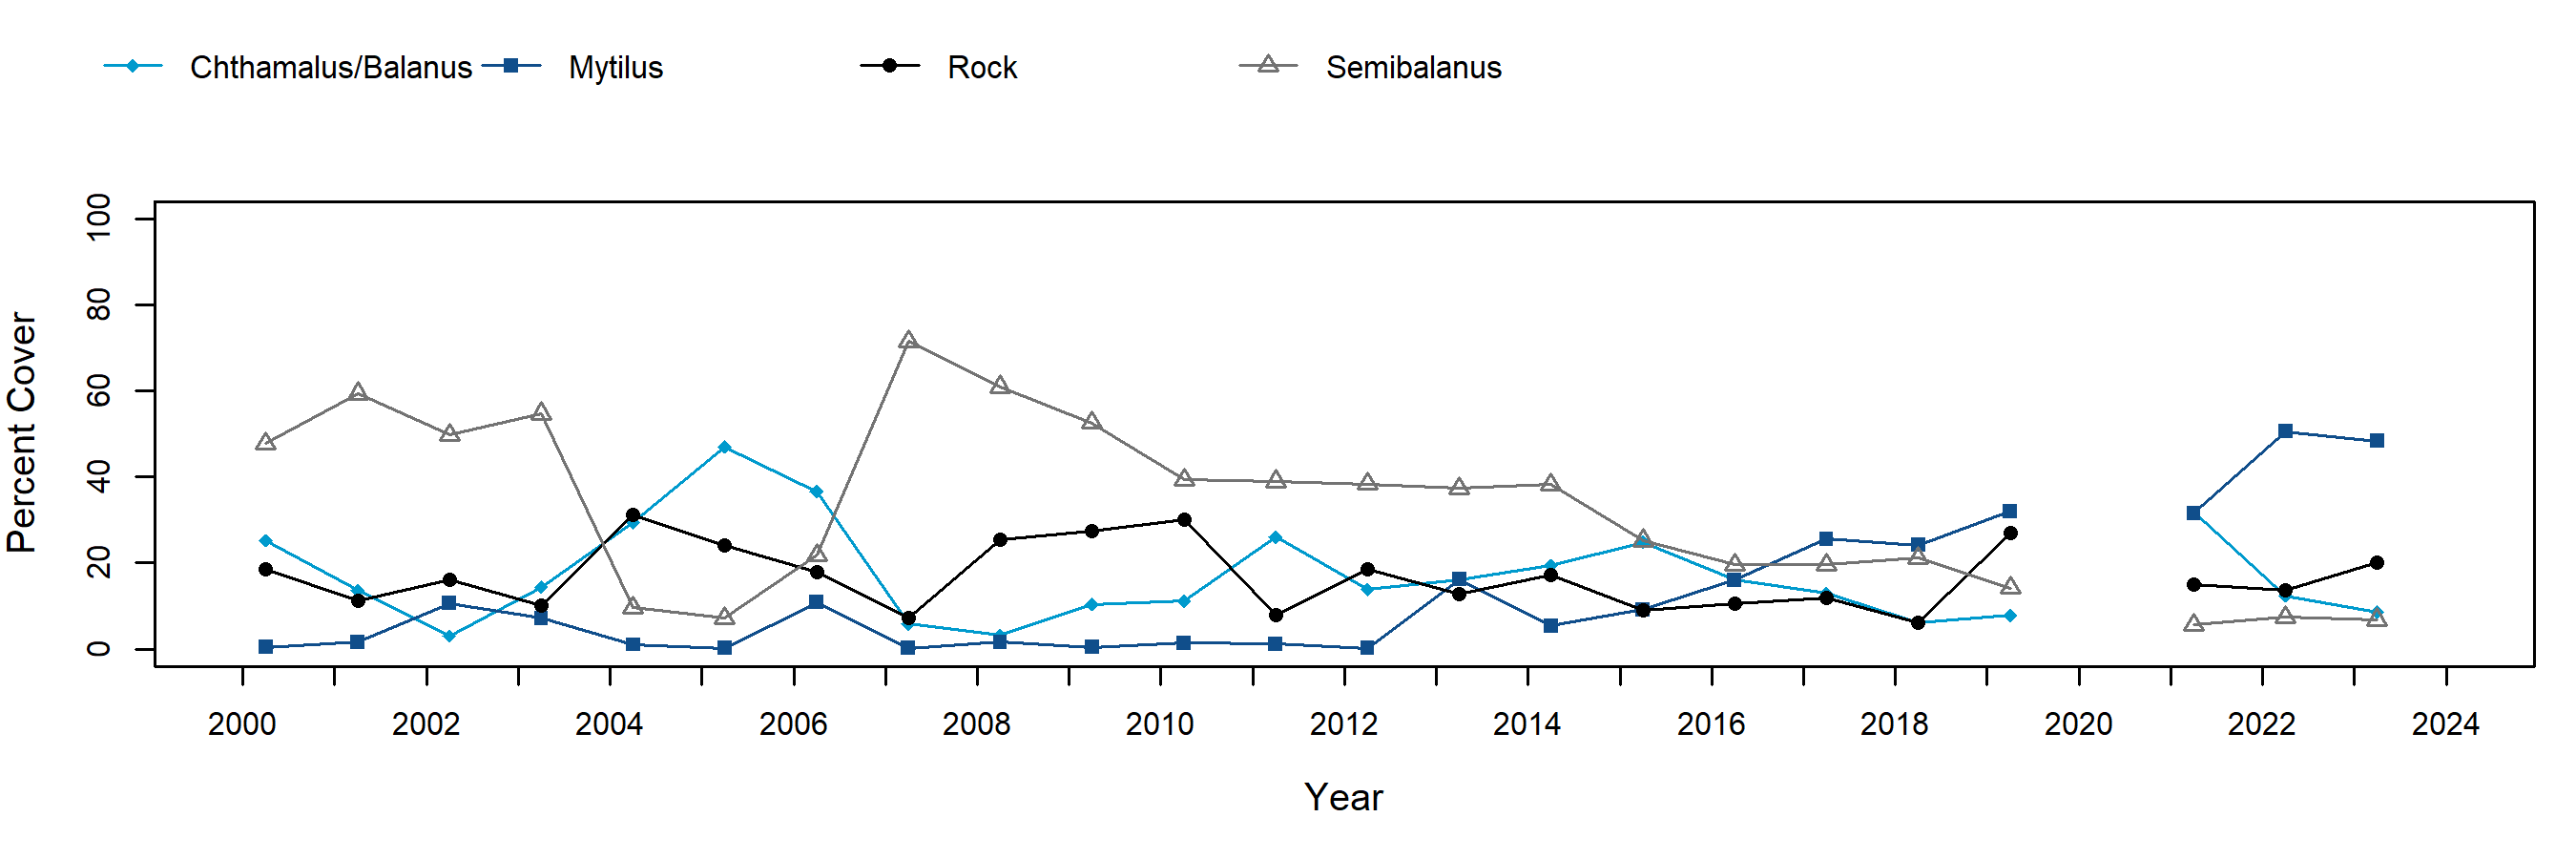 Bob Creek semibalanus trend plot